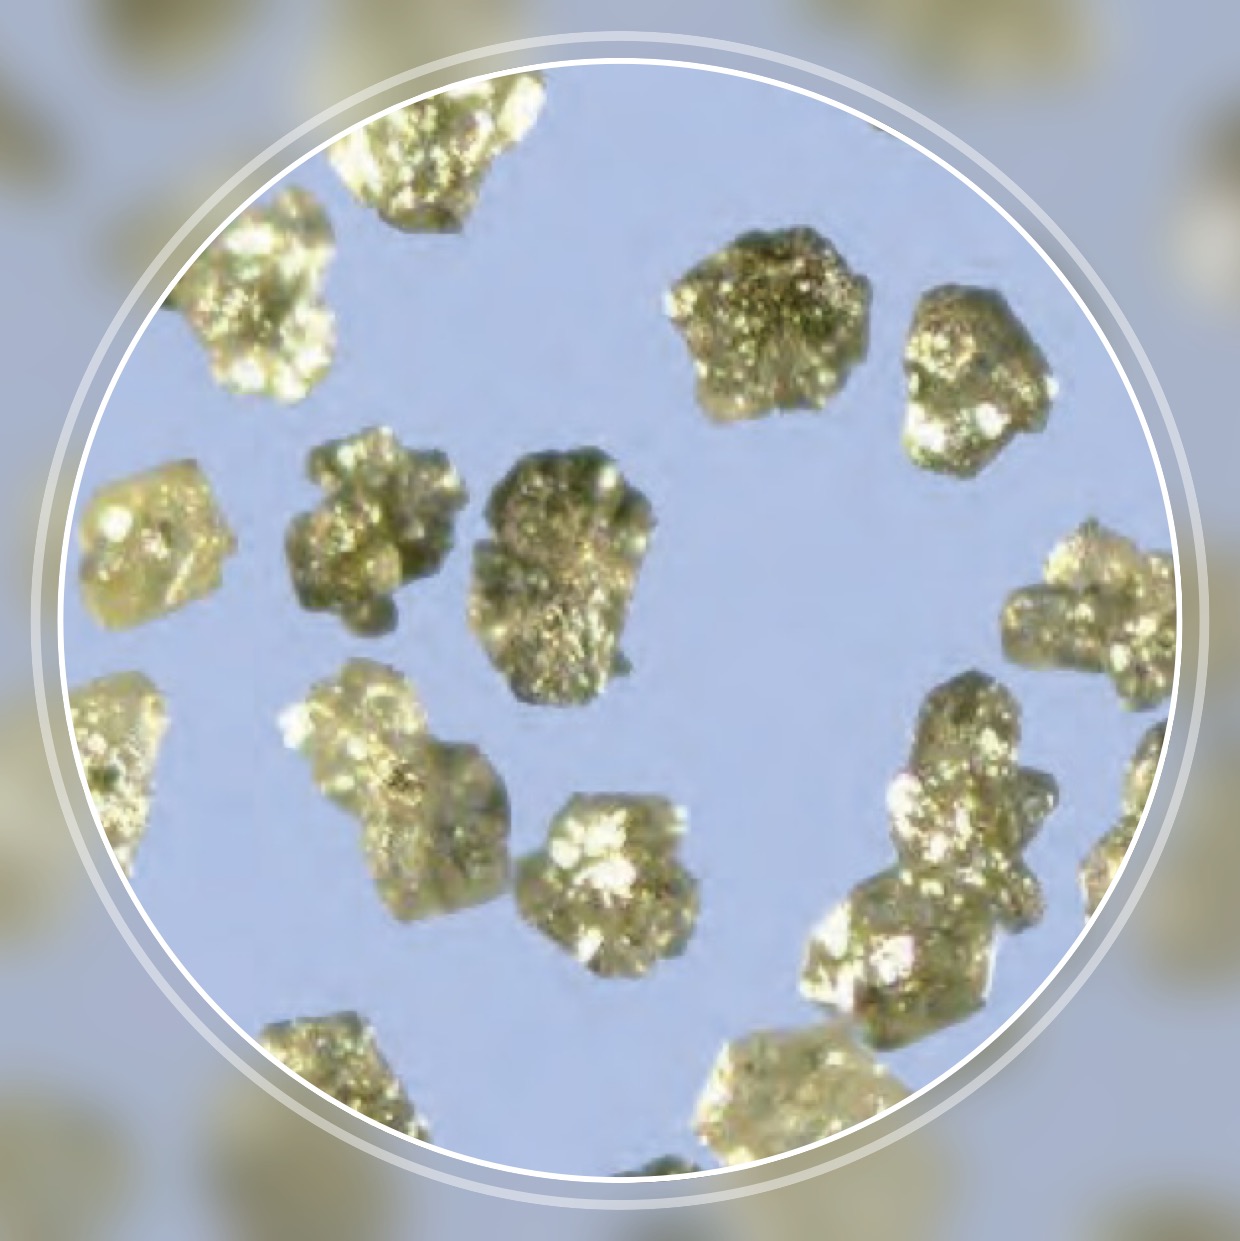 SND-R10 Economy minőségű, félig tömbös gyantakötésű gyémánt nagy törékenységgel